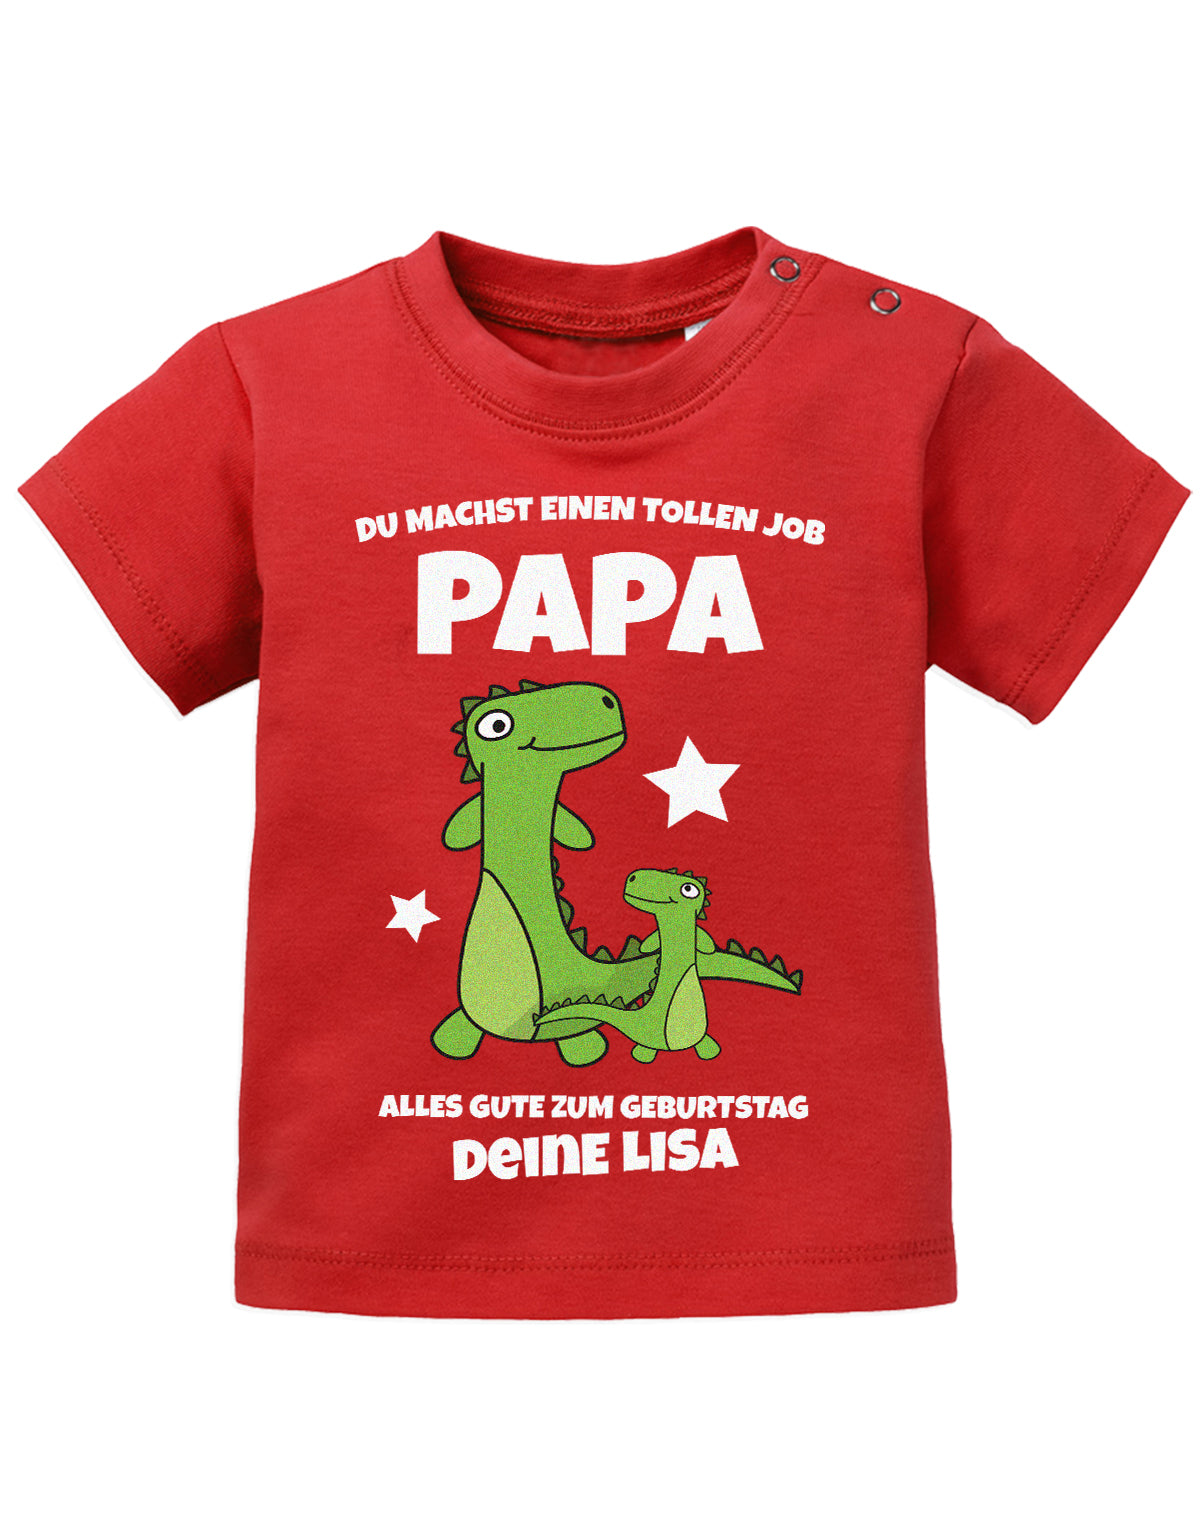 Papa Spruch Baby Shirt. Du machst einen tollen Job, Papa. Alles Gute zum Geburtstag. Personalisiert mit Namen. Rot